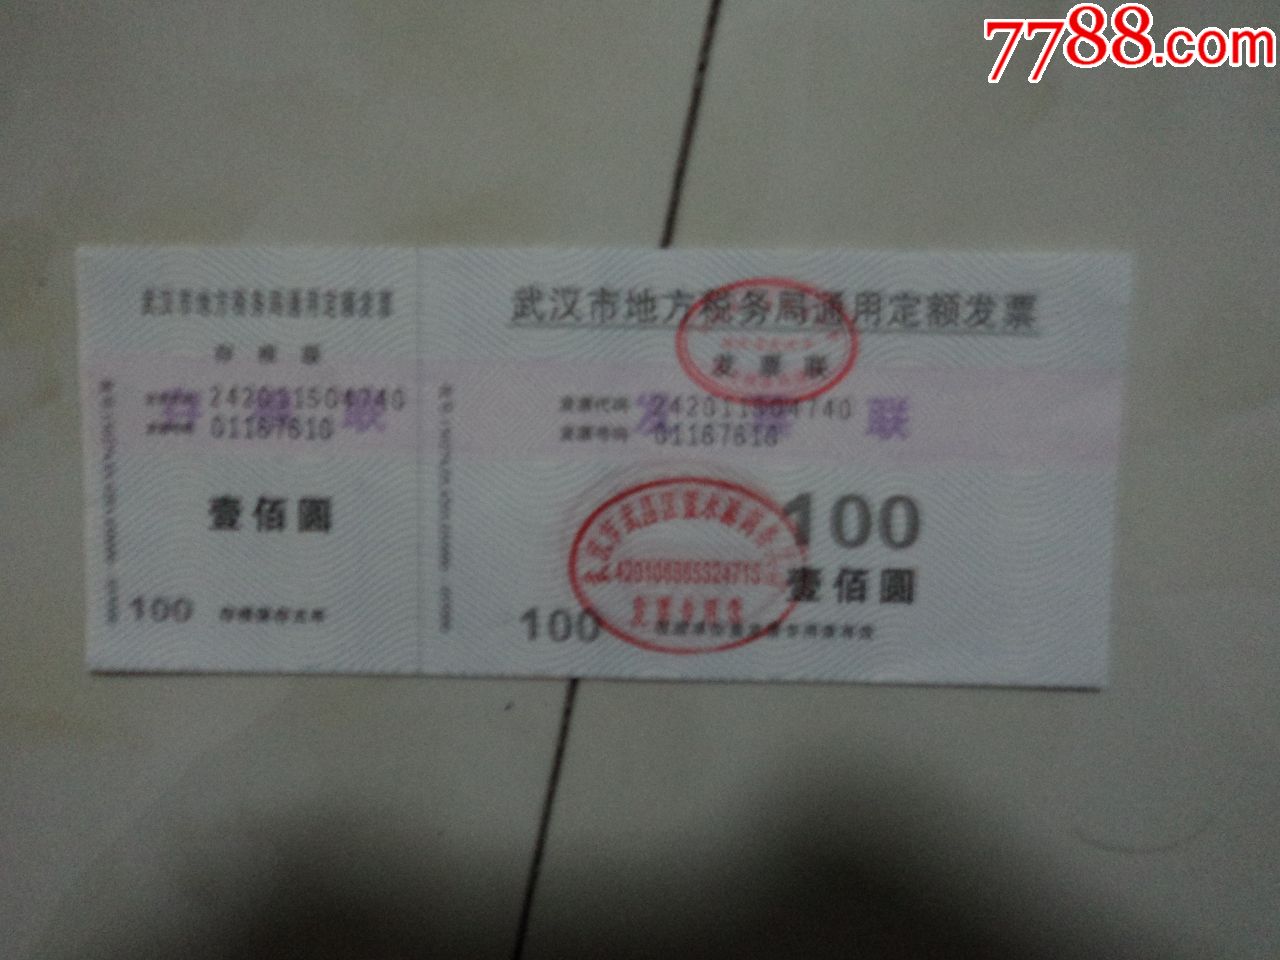 武汉市地方税局通用定额发票3枚连号